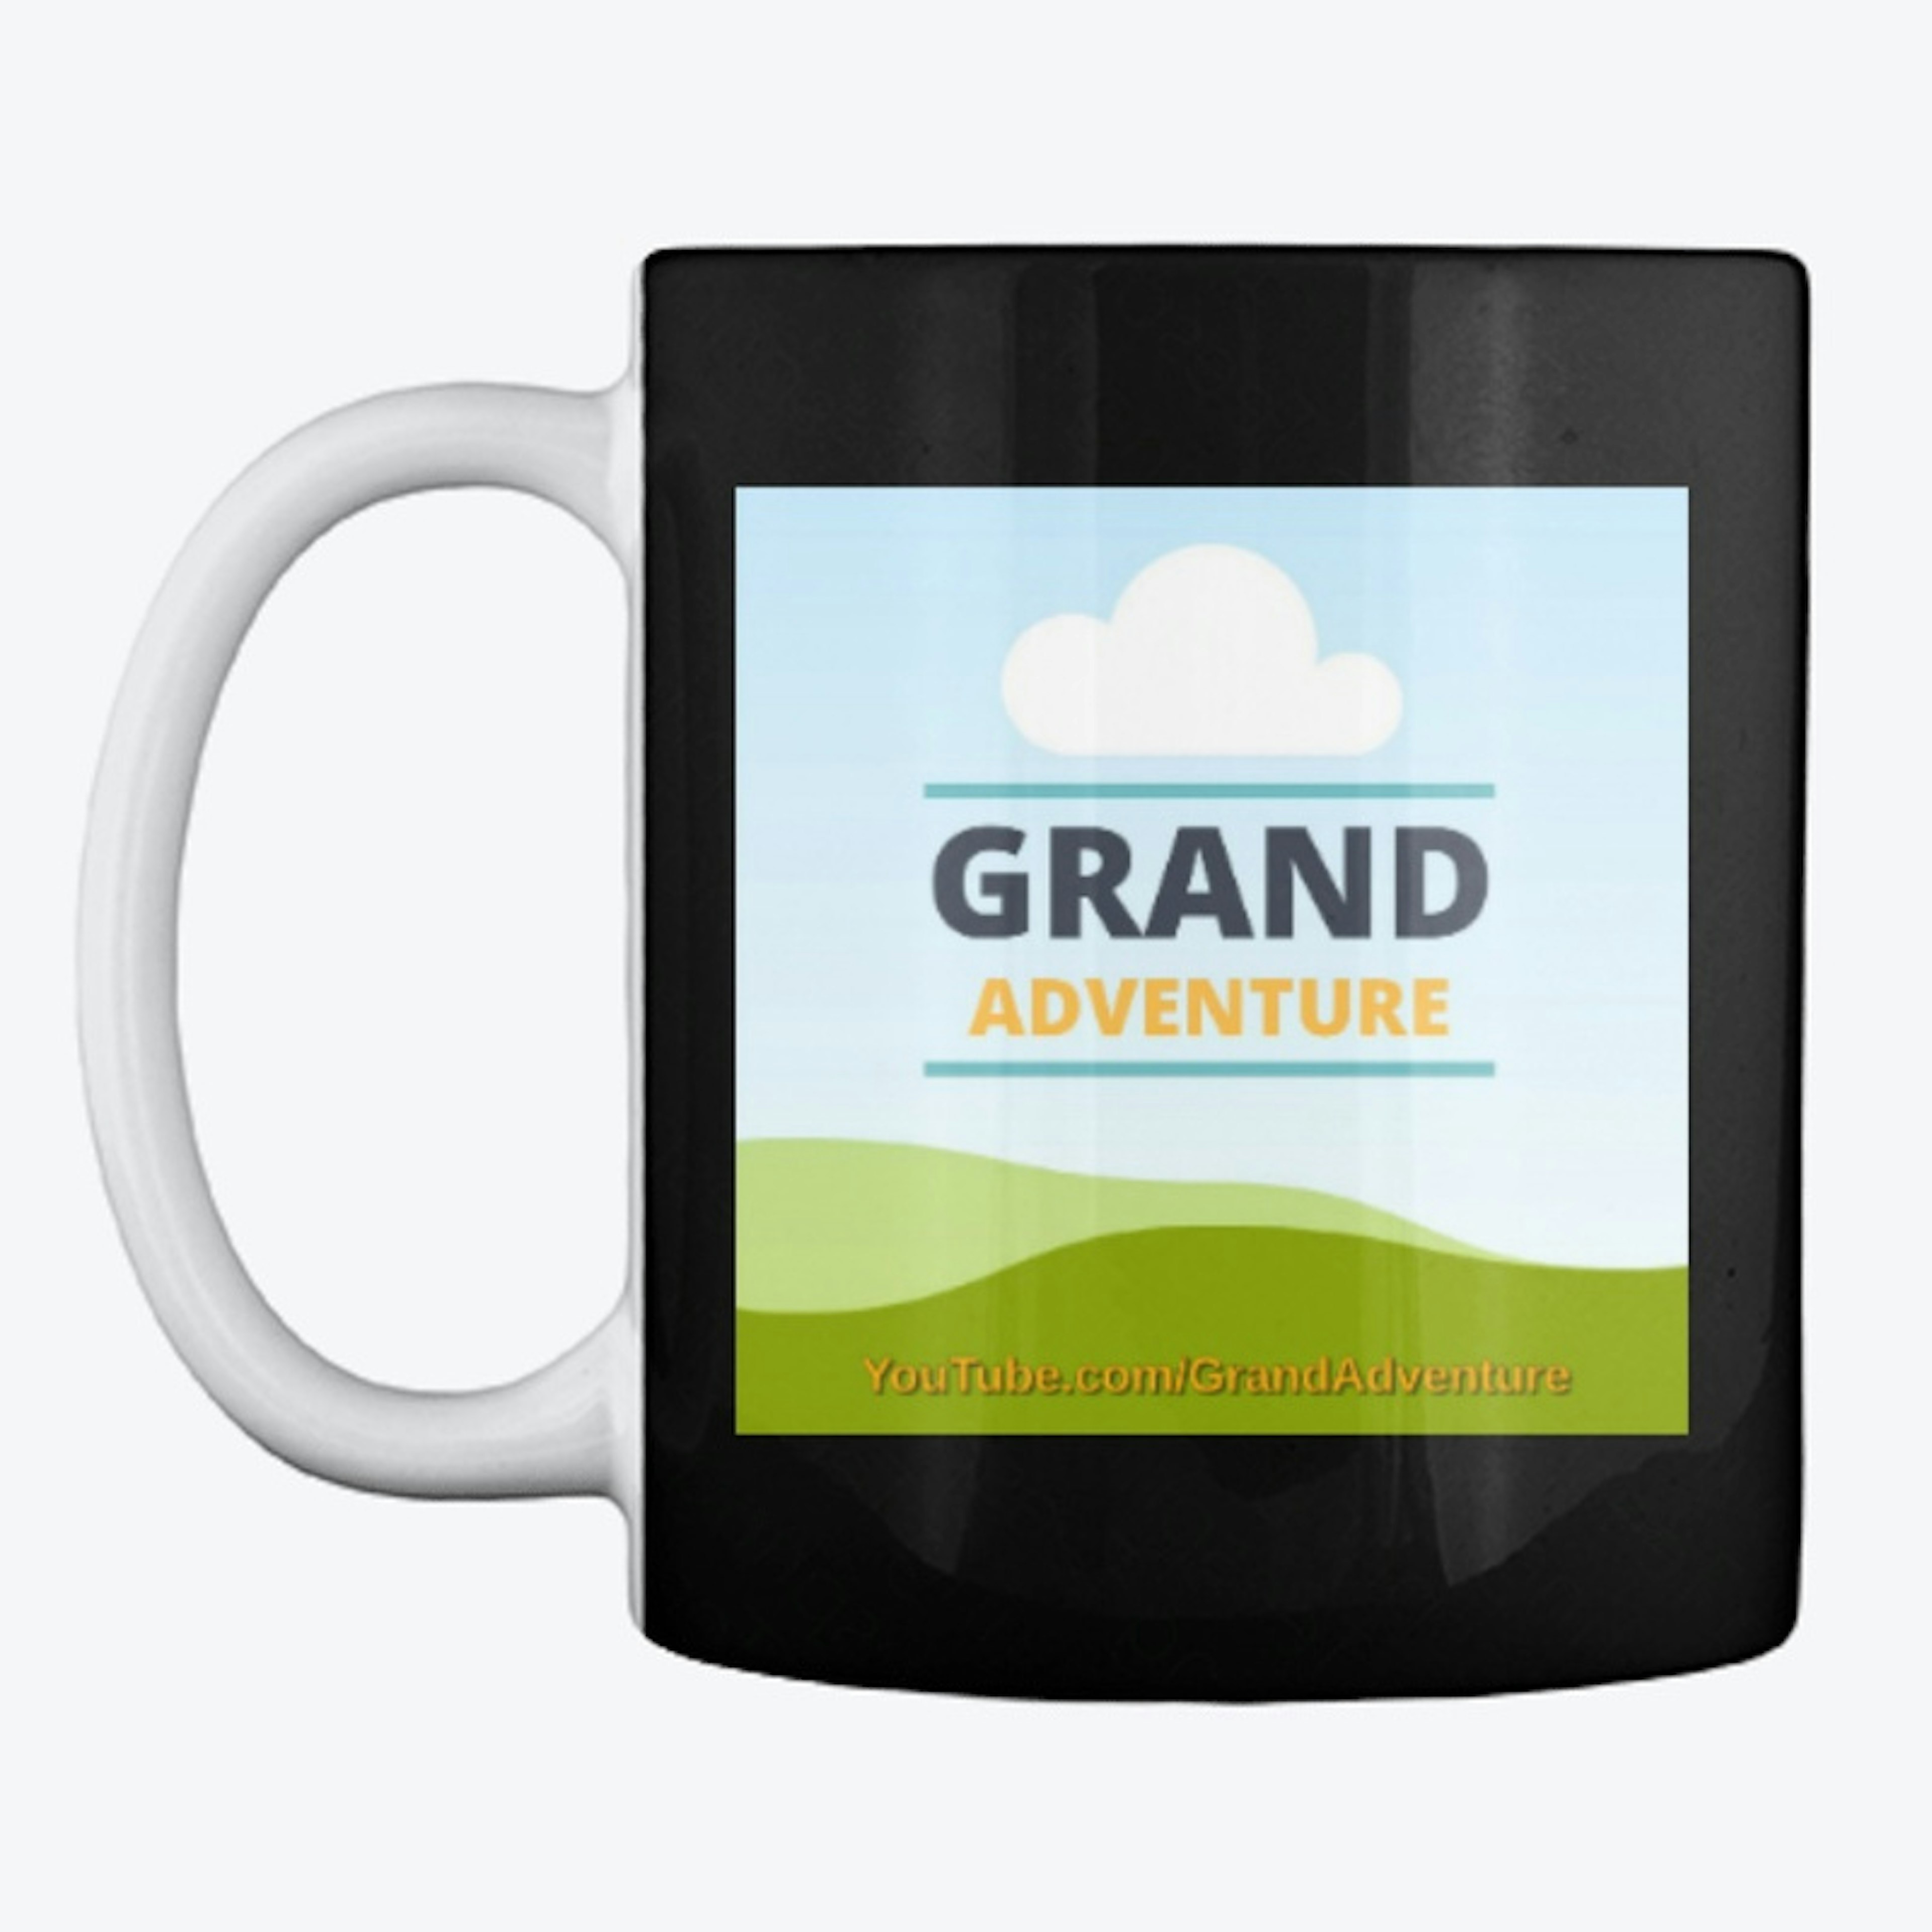 Grand Adventure logo mug